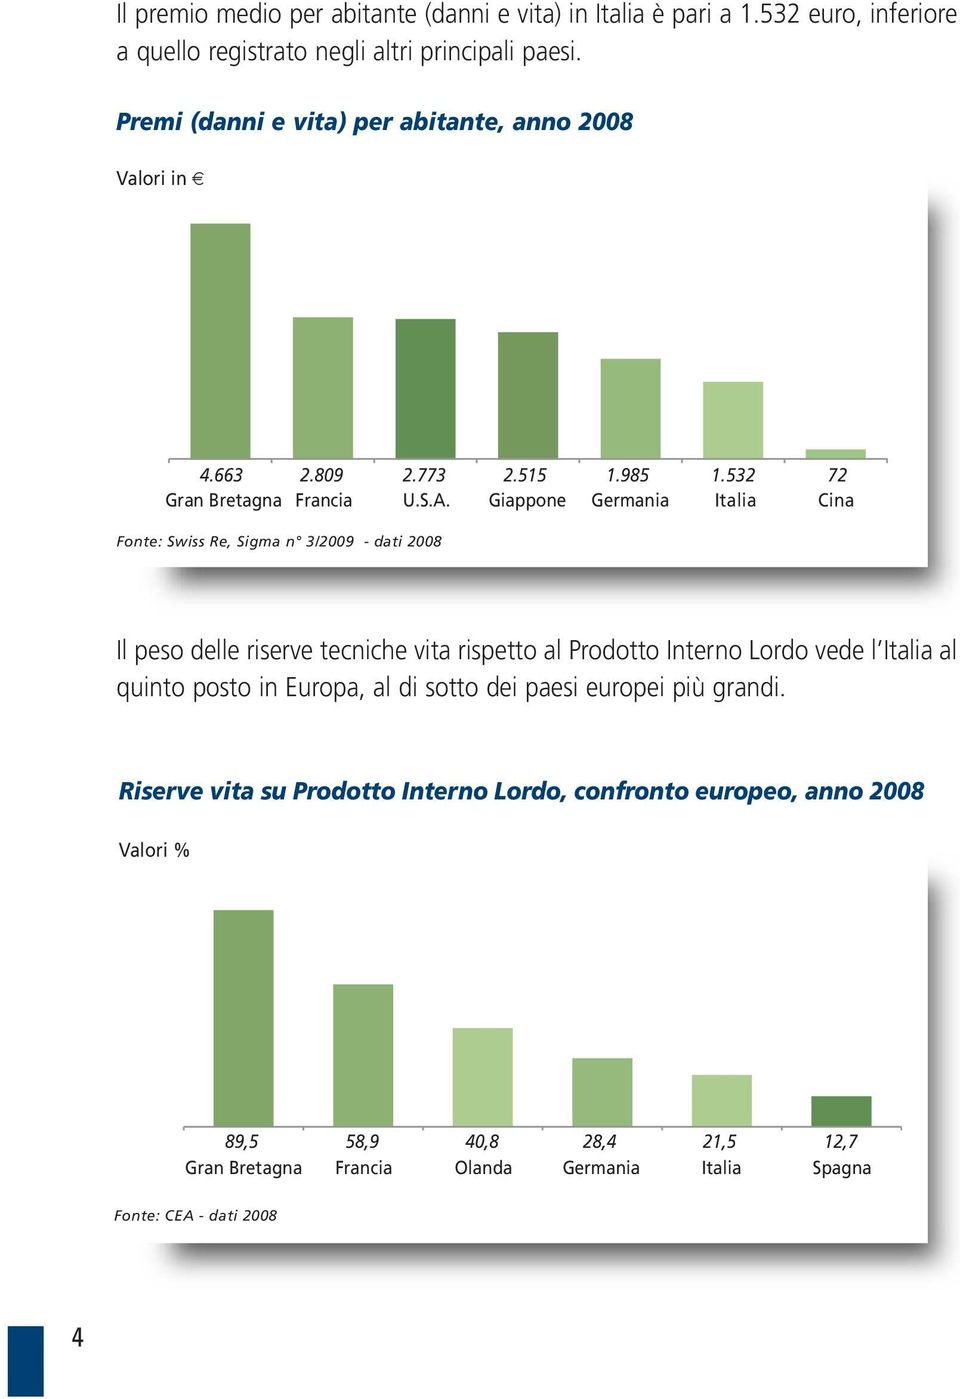 532 Italia 72 Cina Fonte: Swiss Re, Sigma n 3/2009 - dati 2008 Il peso delle riserve tecniche vita rispetto al Prodotto Interno Lordo vede l Italia al quinto posto